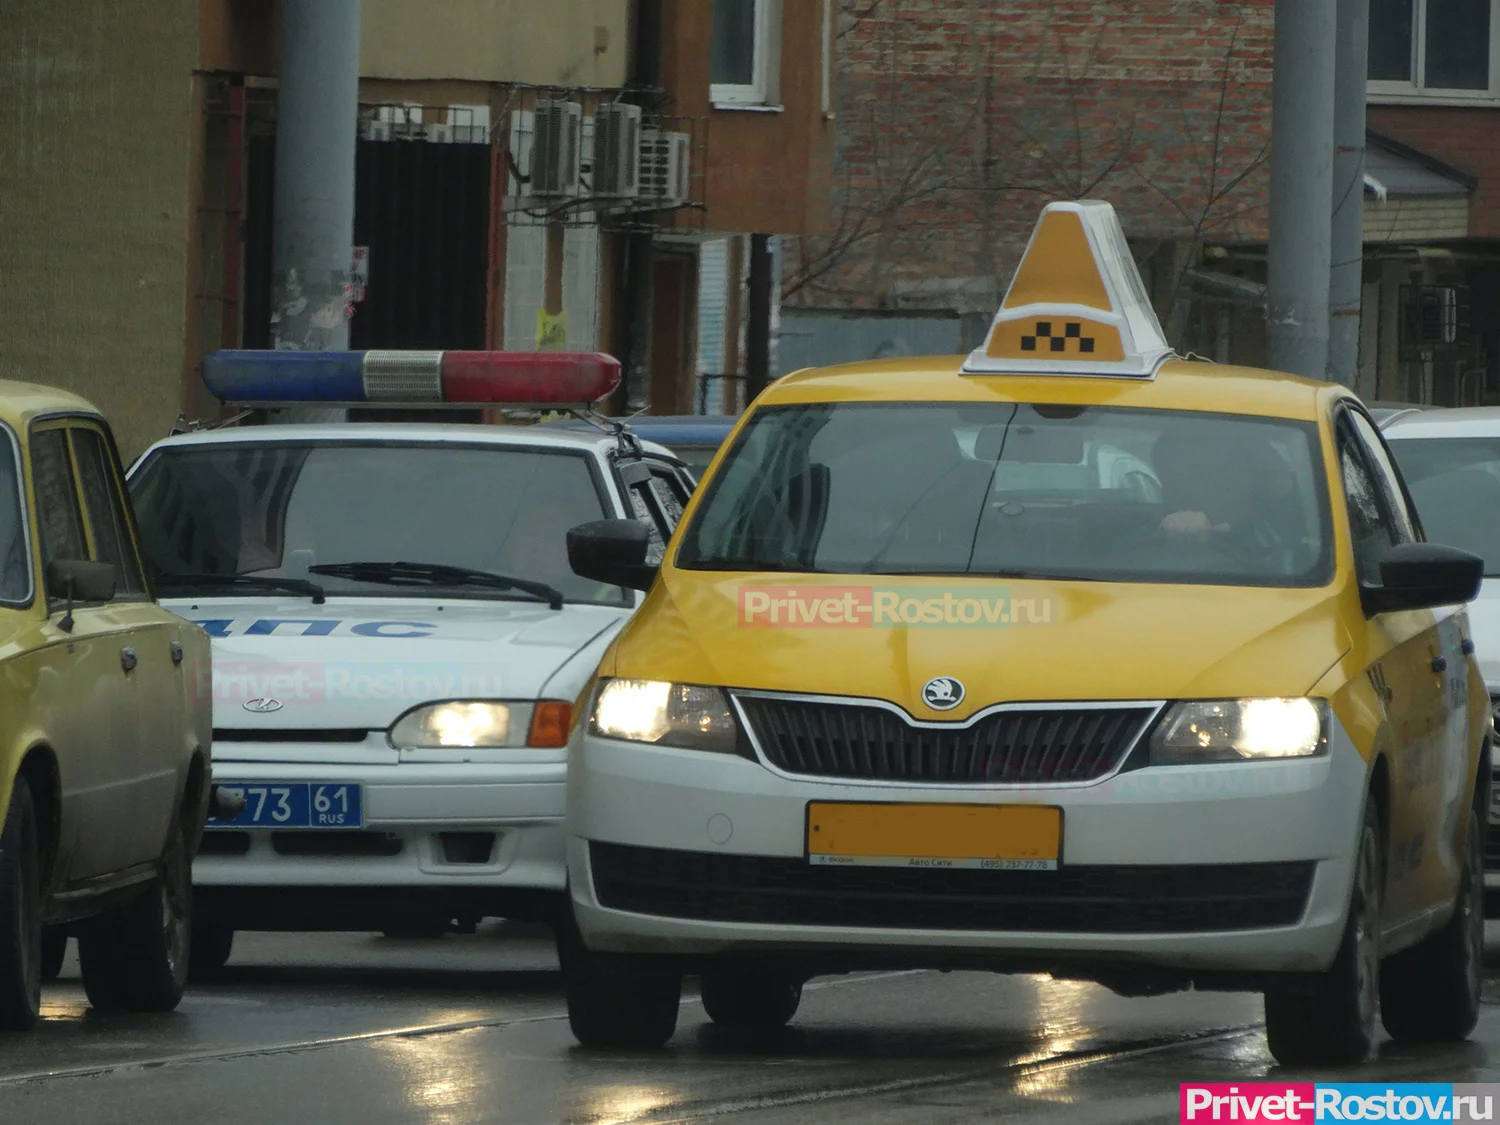 Ростовская область лидирует по повышению стоимости на услуги такси в 2023-м